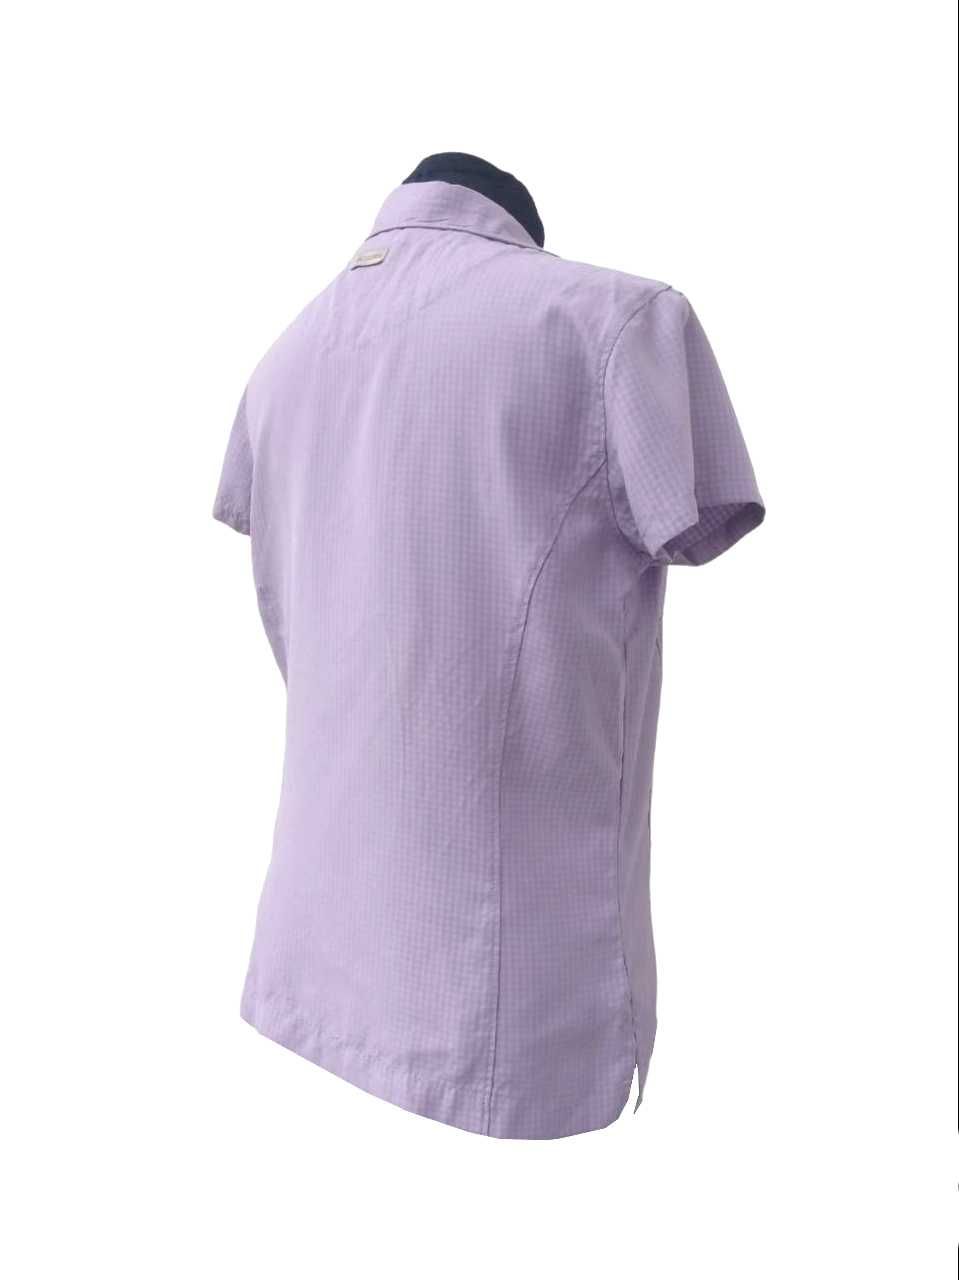 Fioletowa liliowa koszula damska w kratę 36 S Columbia Sportswear